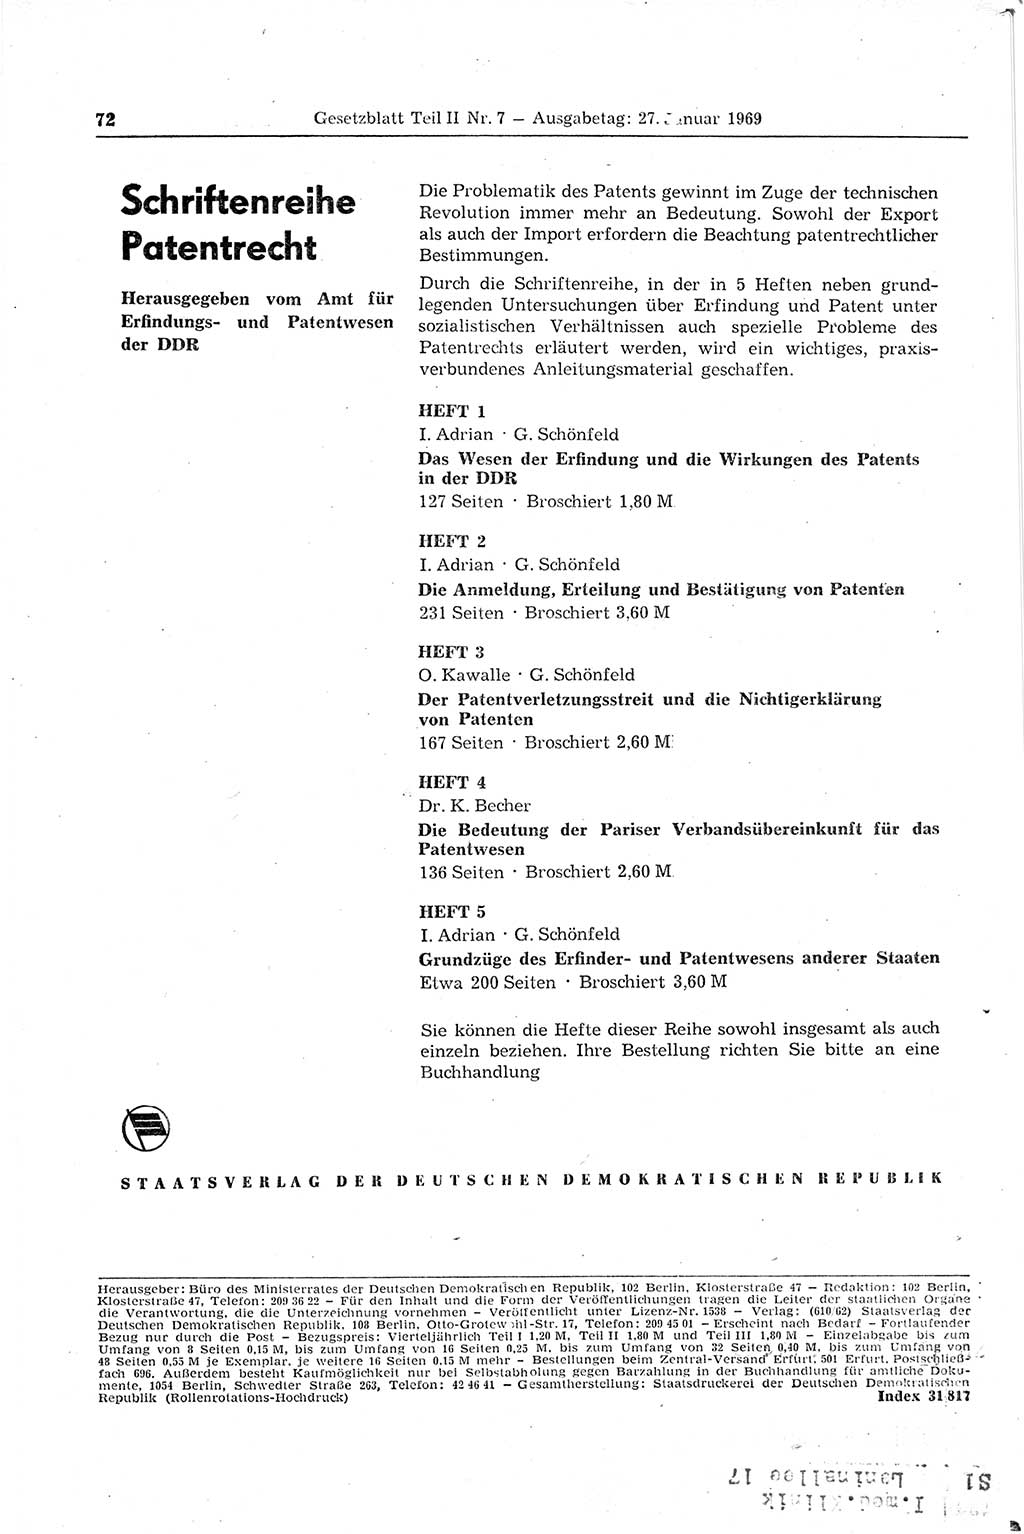 Gesetzblatt (GBl.) der Deutschen Demokratischen Republik (DDR) Teil ⅠⅠ 1969, Seite 72 (GBl. DDR ⅠⅠ 1969, S. 72)